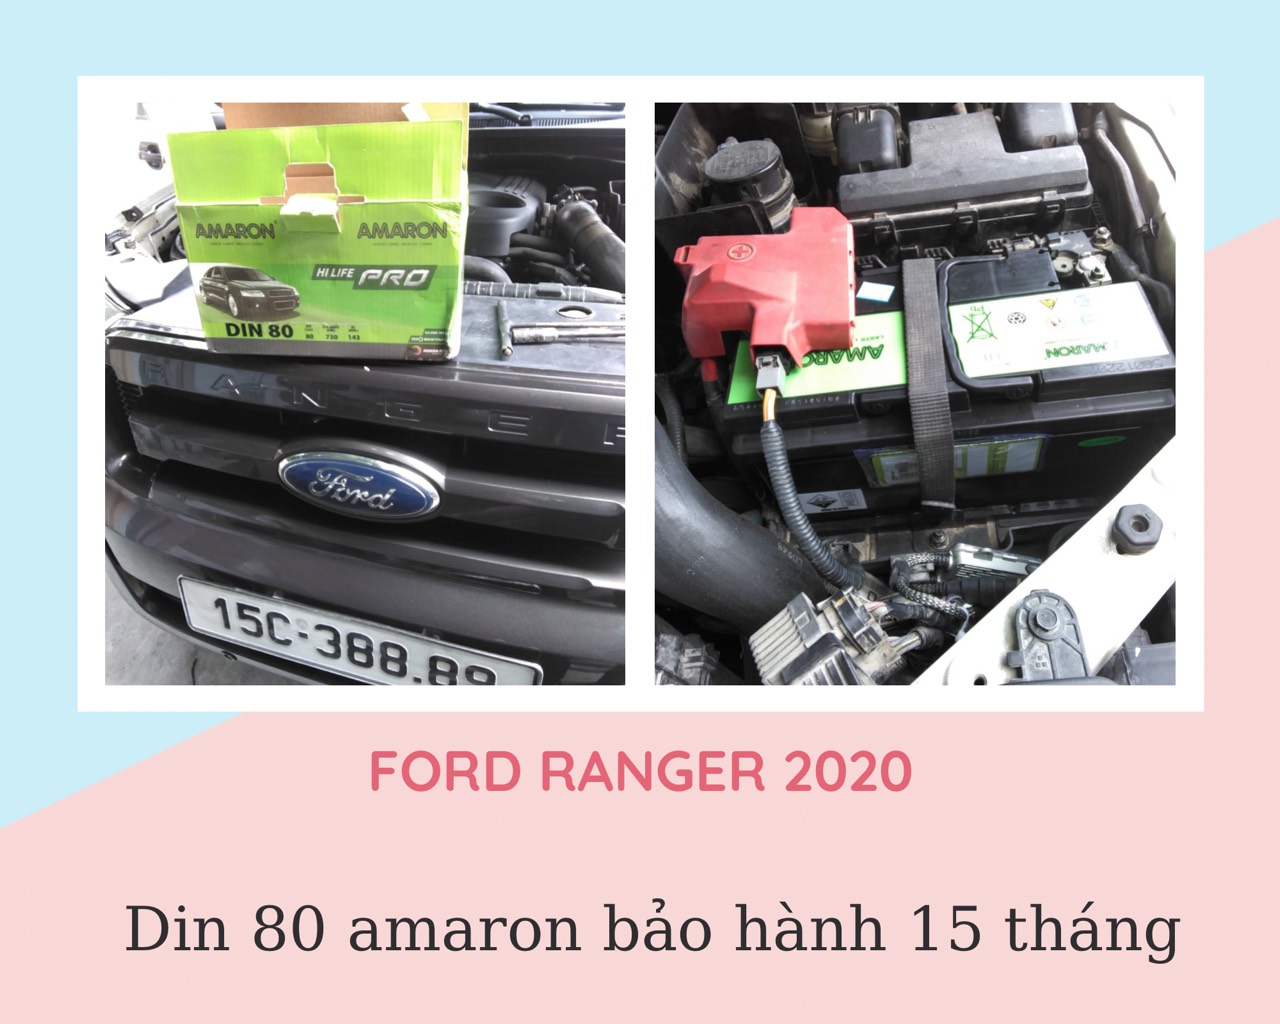 Ắc quy Ford Ranger lắp din 80 amaron bảo hành 15 tháng